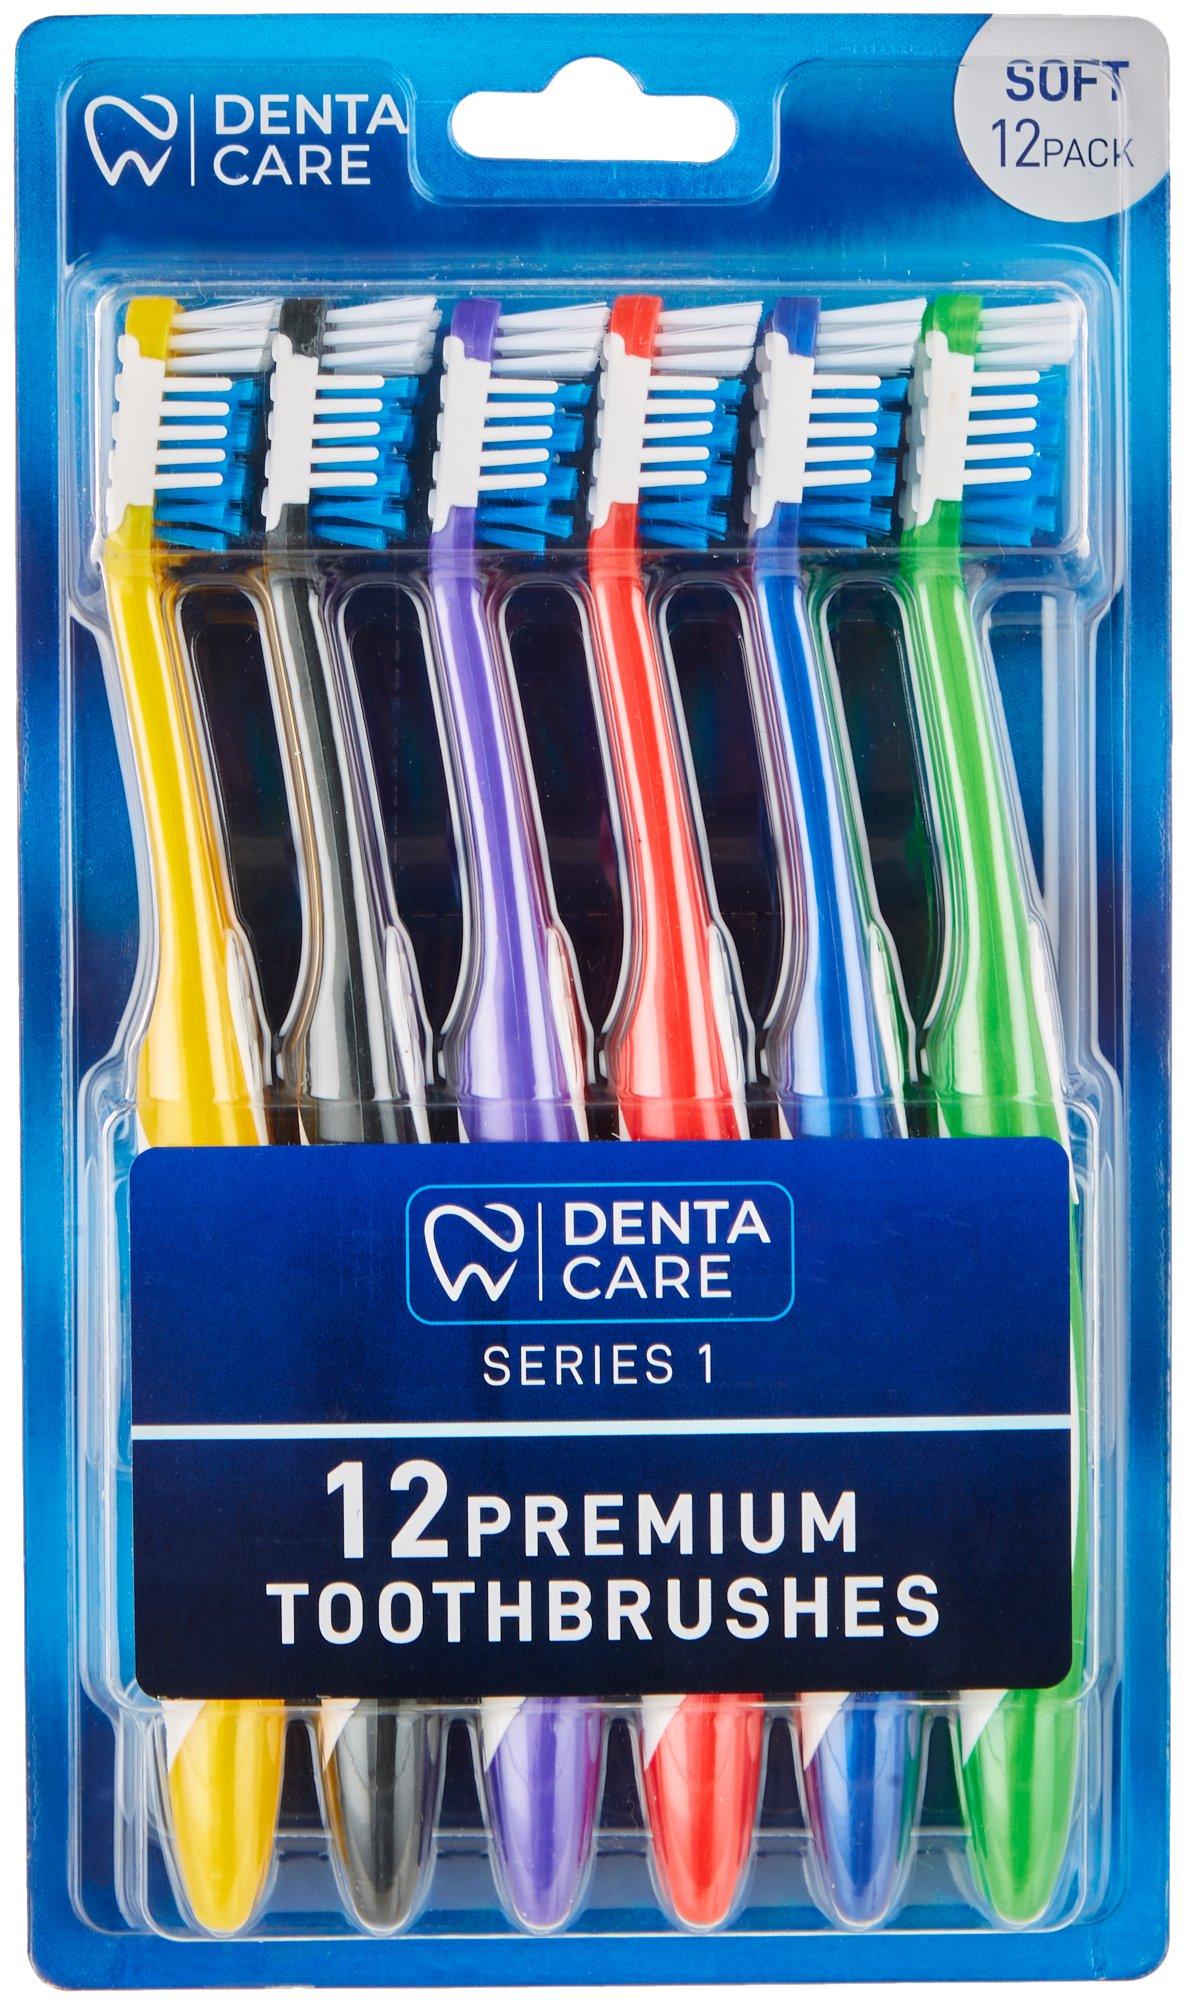 12 Pk Premium Toothbrushes